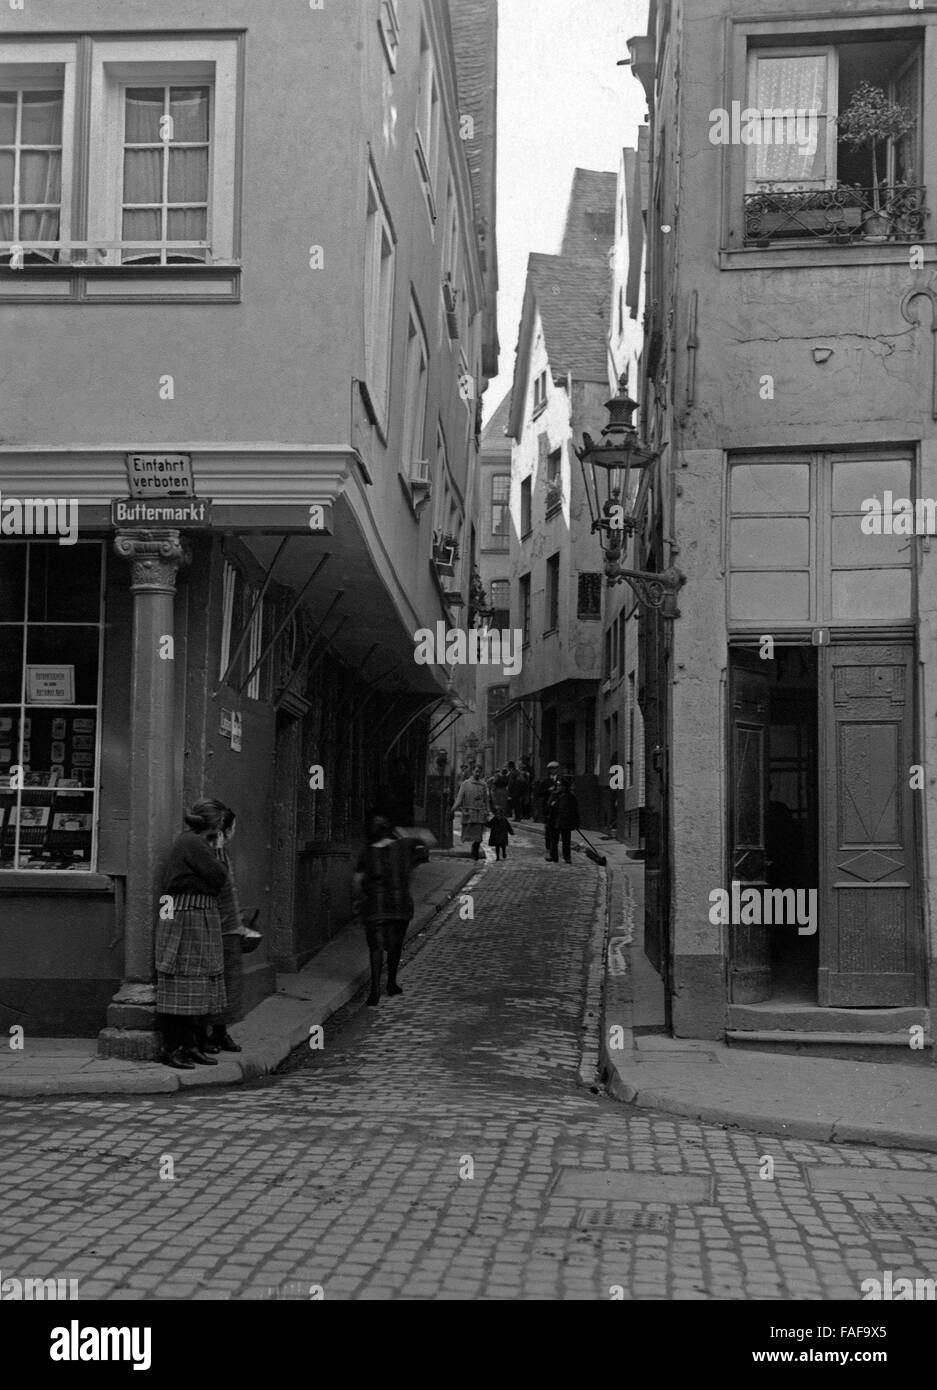 Blick vom Buttermarkt in die Lintgasse in der Altstadt von Köln, Deutschland 1920er Jahre. View from Buttermarkt to Lintgasse lane at the old city of Cologne, Germany 1920s. Stock Photo